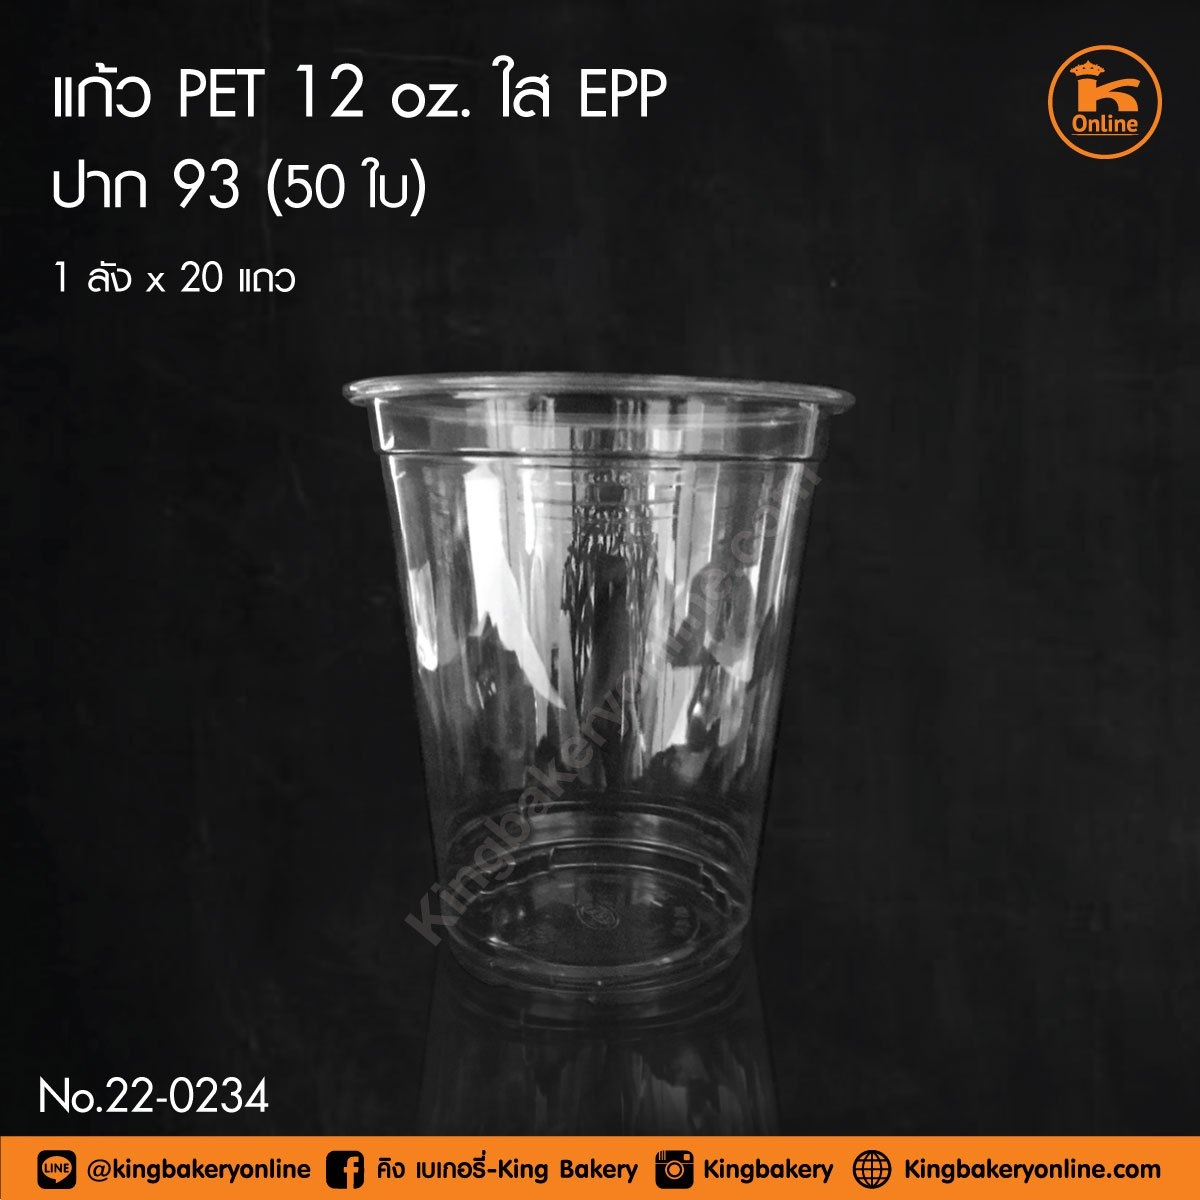 แก้ว PET 12 oz ใส EPP ปาก 93 (ลังx20แถว)